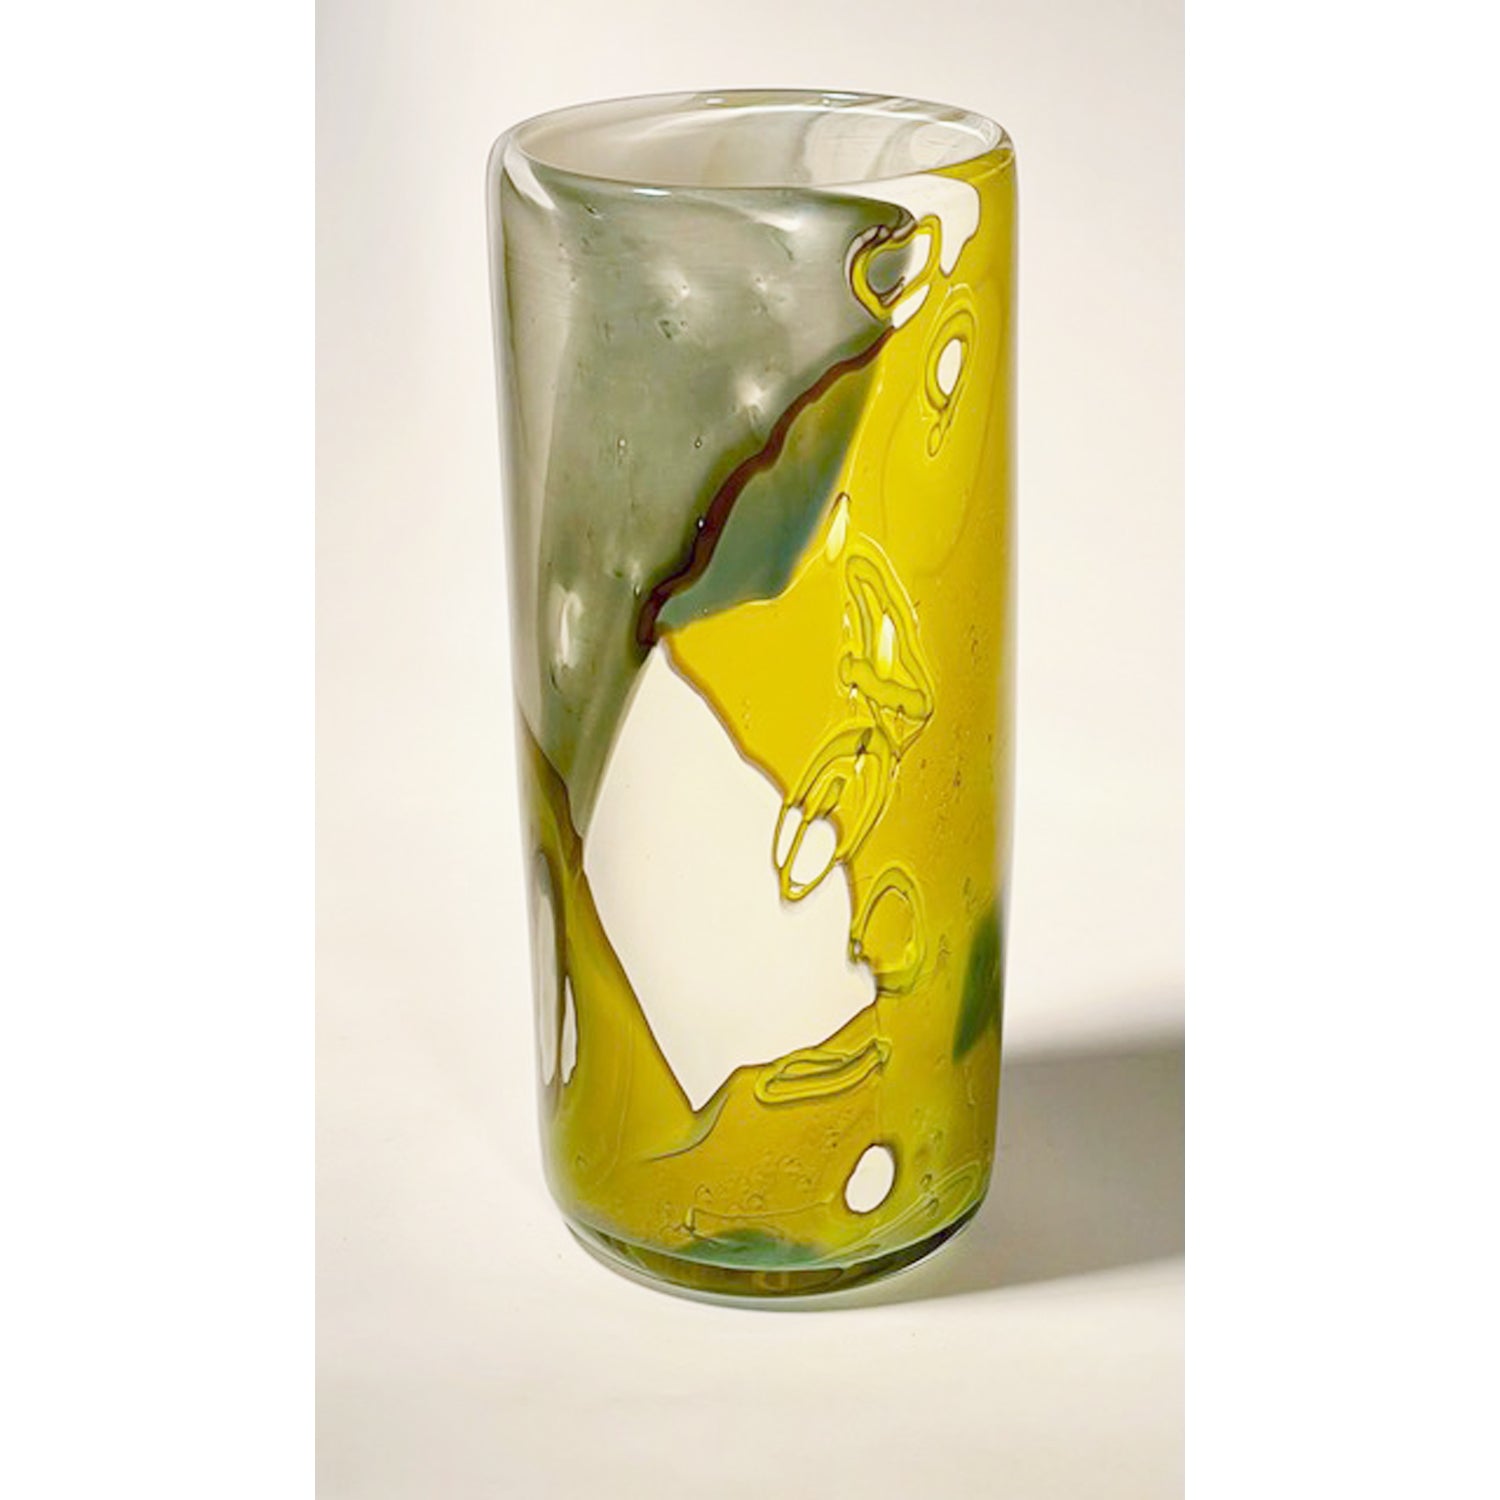 Sue Rankin - Sm Olive Green Cylinder Vase, 7.5" x 3" x 3"